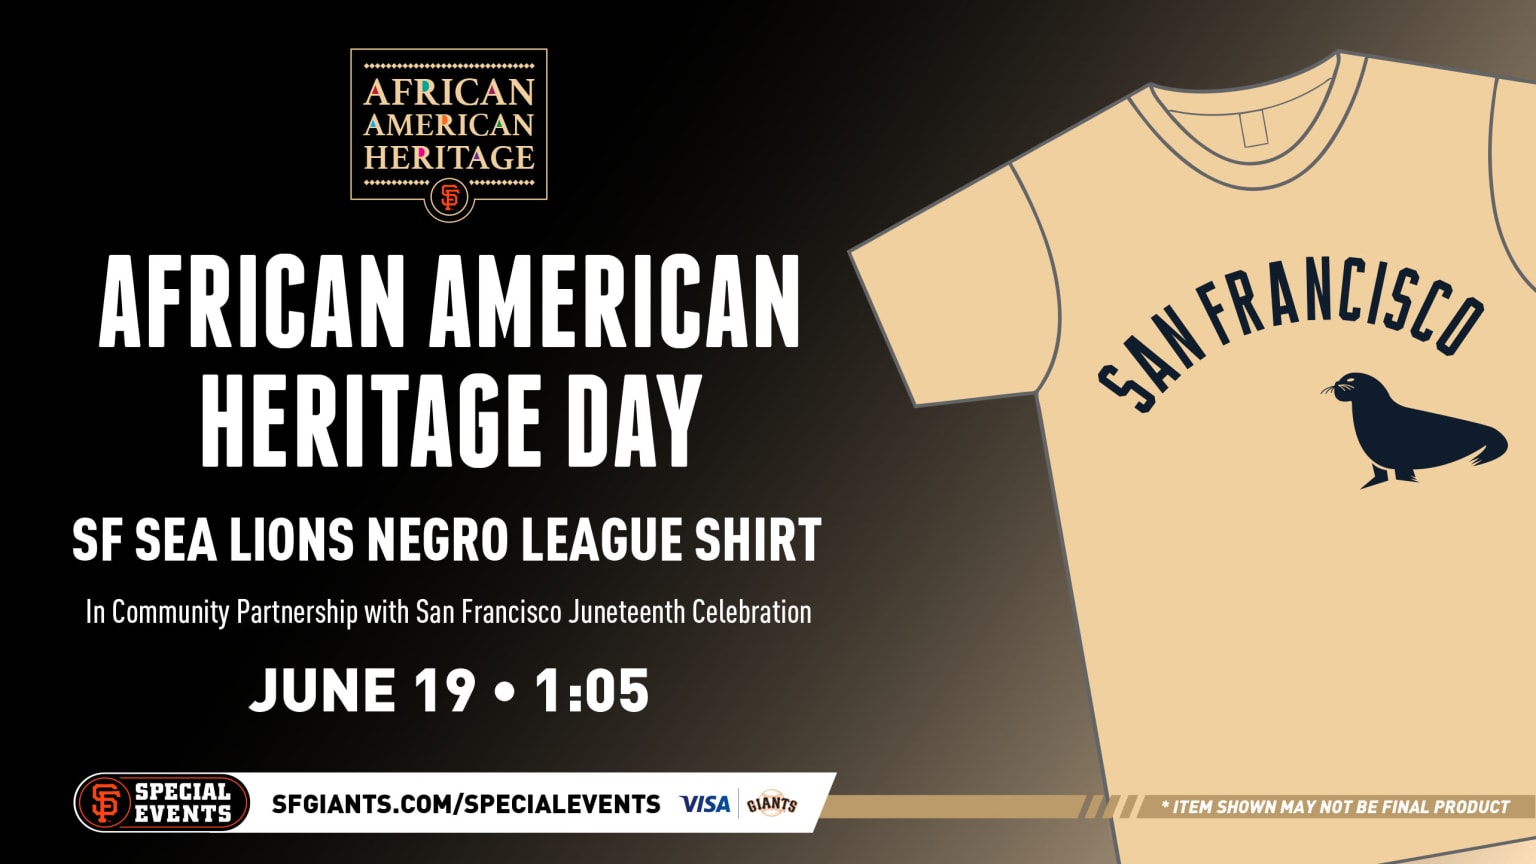 Negro Leagues Celebration